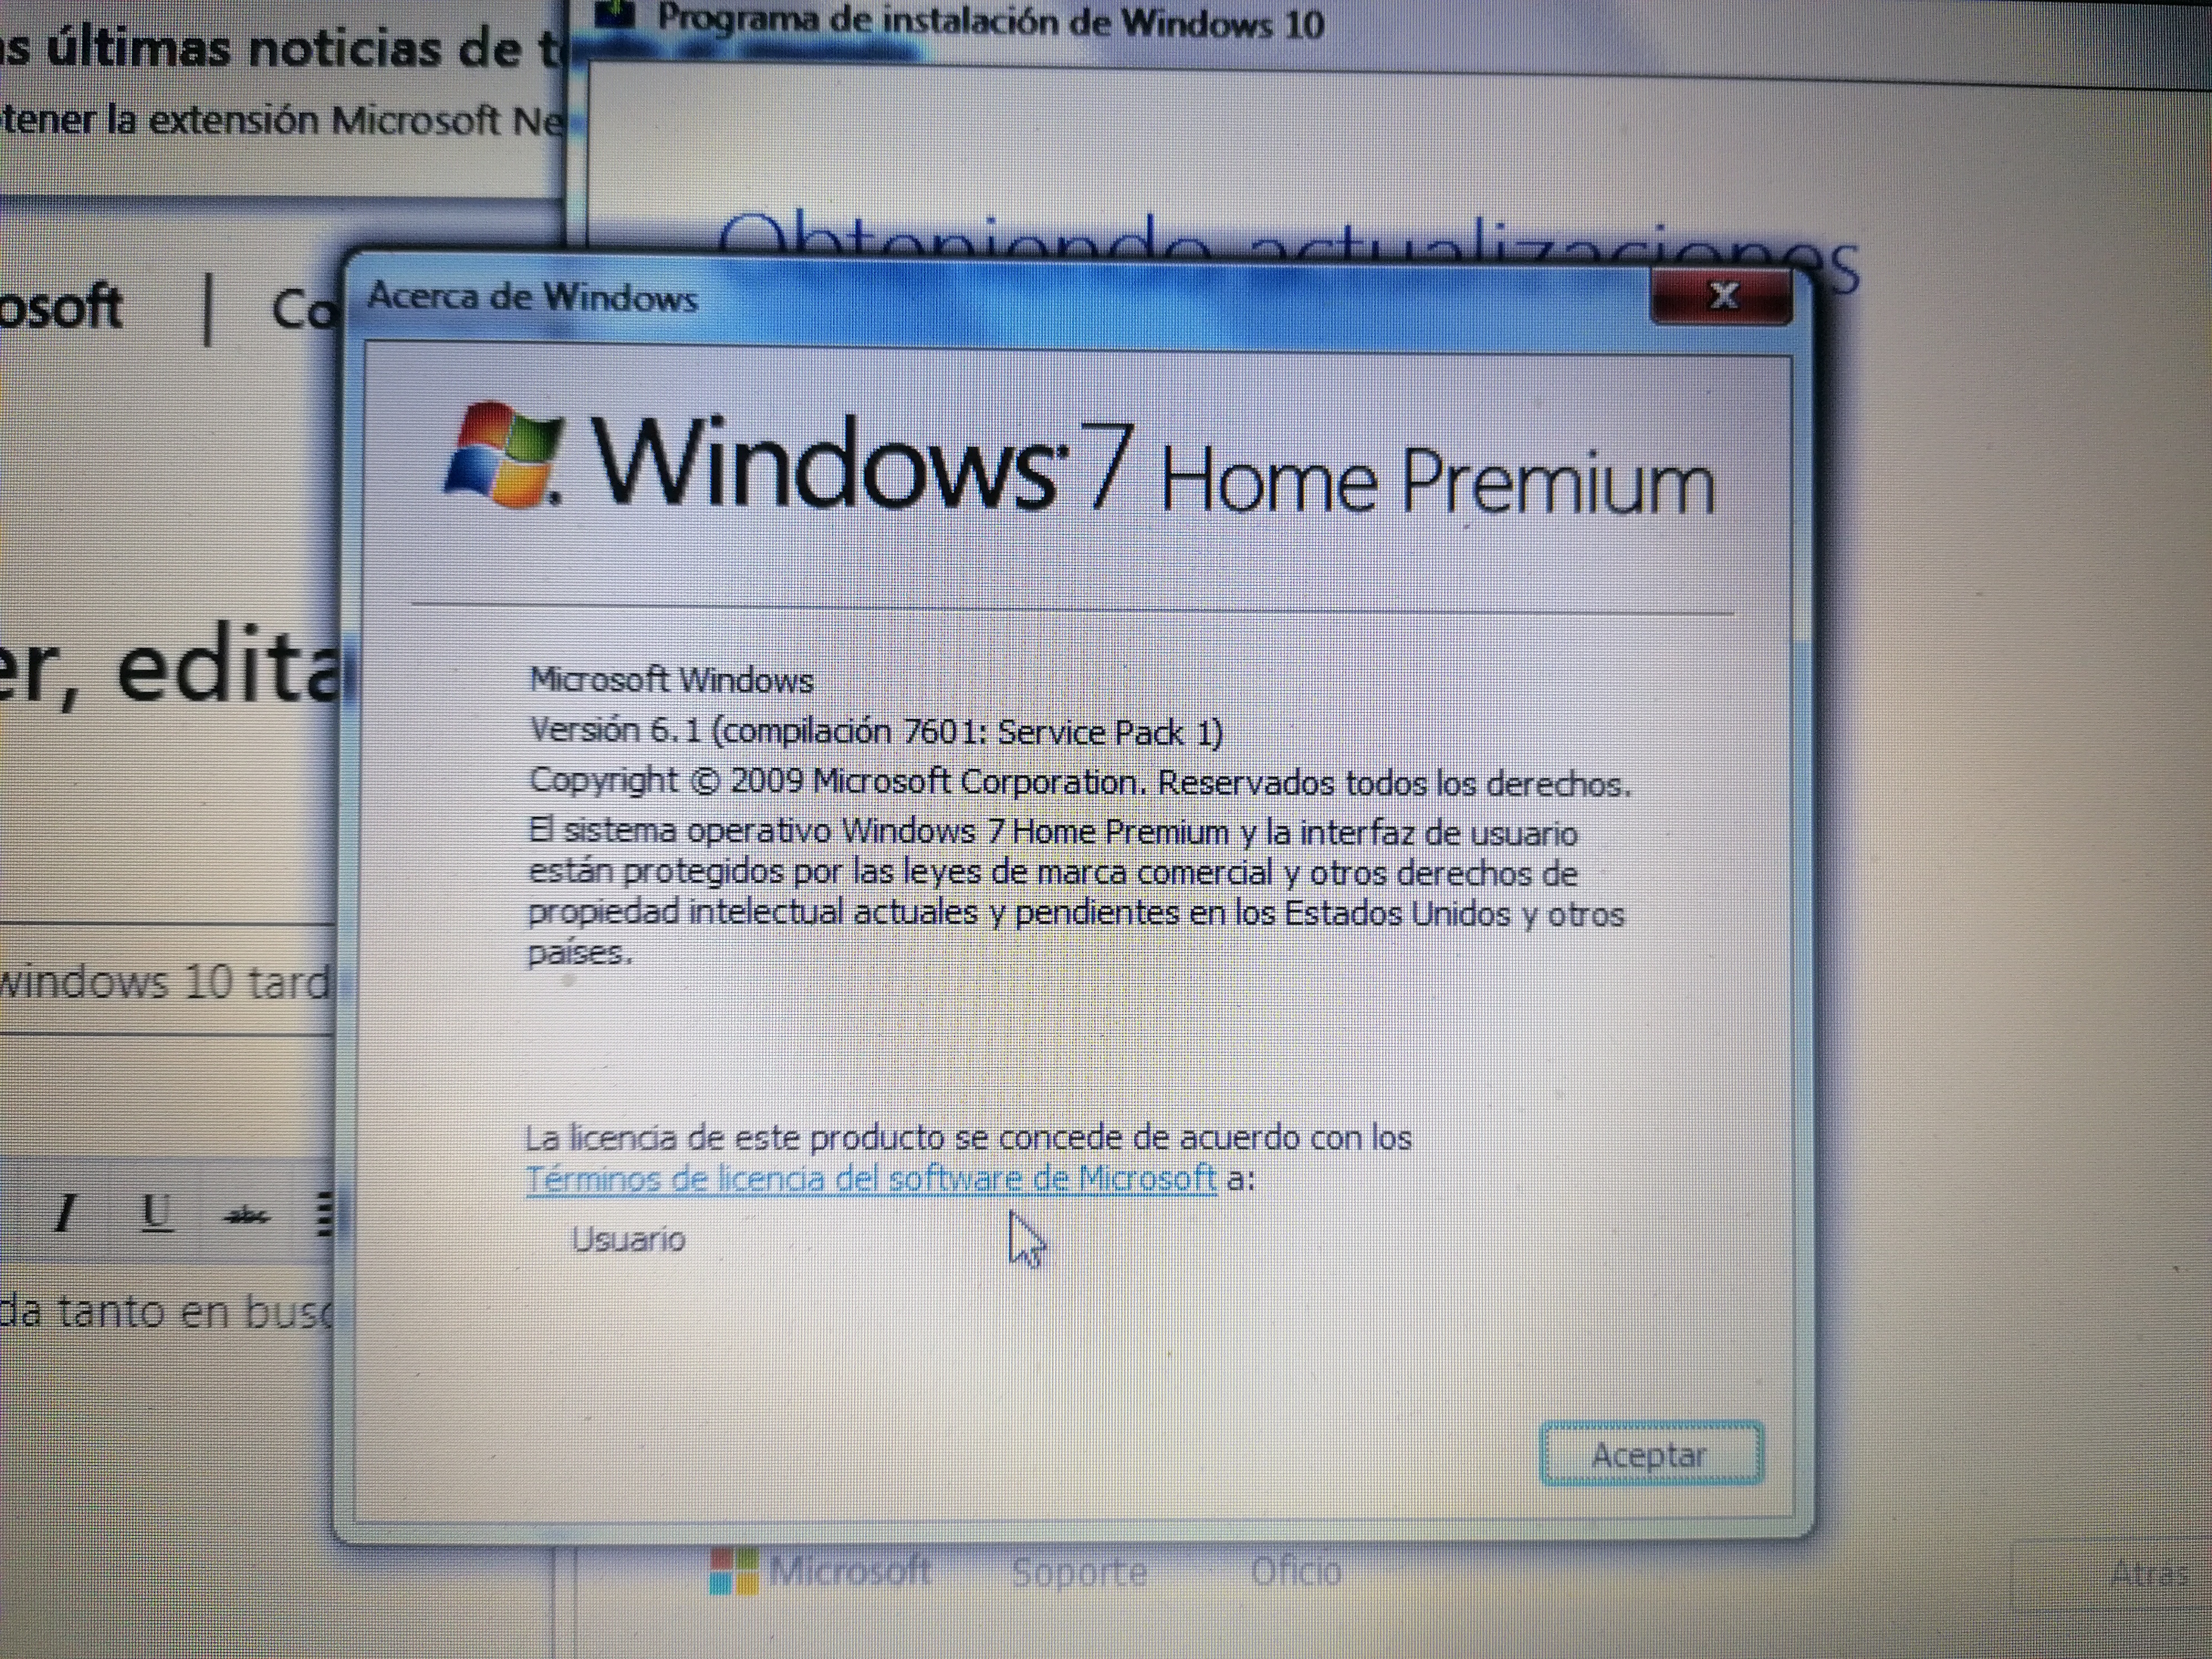 al instalar windows 10 tarda mucho las busqueda de actualizaciones -  Microsoft Community